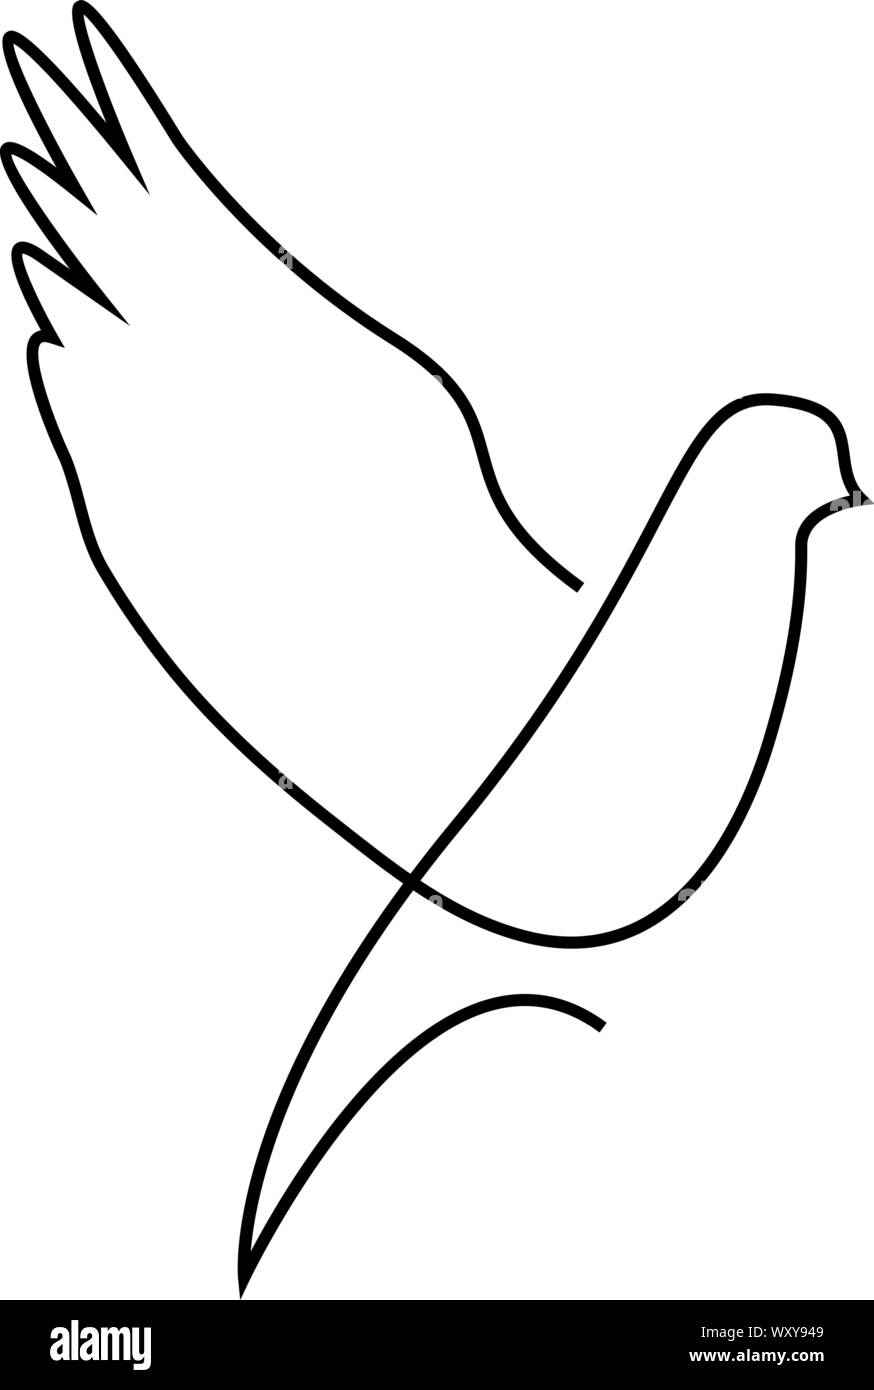 Une ligne dove pigeon vole ou silhouette design.Hand drawn style minimaliste. Vector illustration Illustration de Vecteur